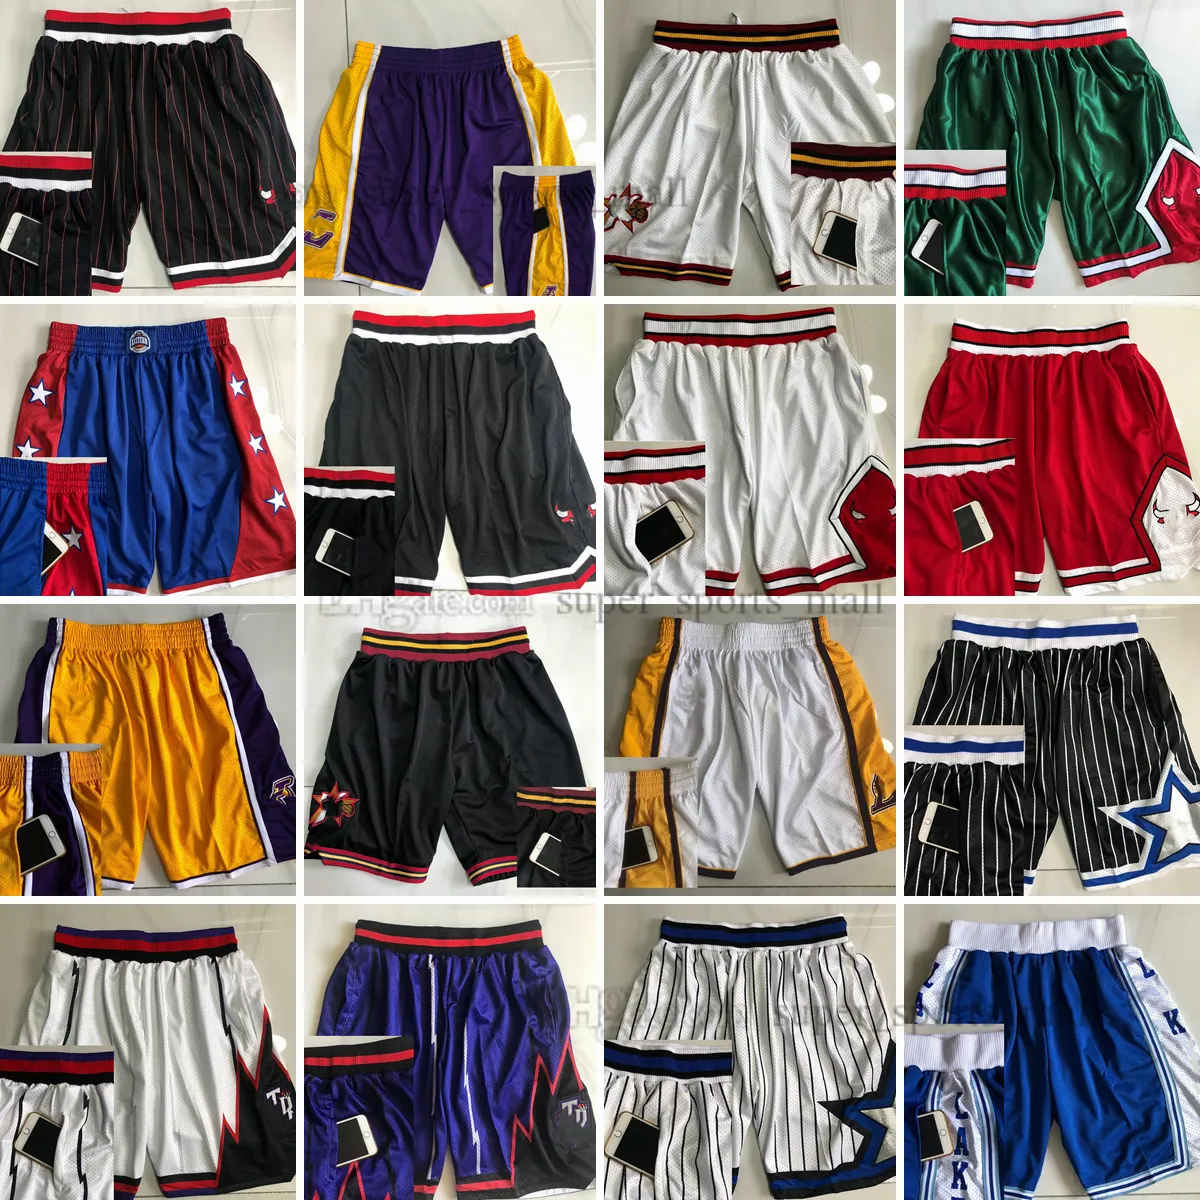 Basketbol Şortları Spor Giyim Pocket ile Yan Büyük Yüz Tüm Takım Kısa Eşyalar Erkekler Moda Stili Mesh Retro Kaliteli Kısa Beyaz Siyah Kırmızı